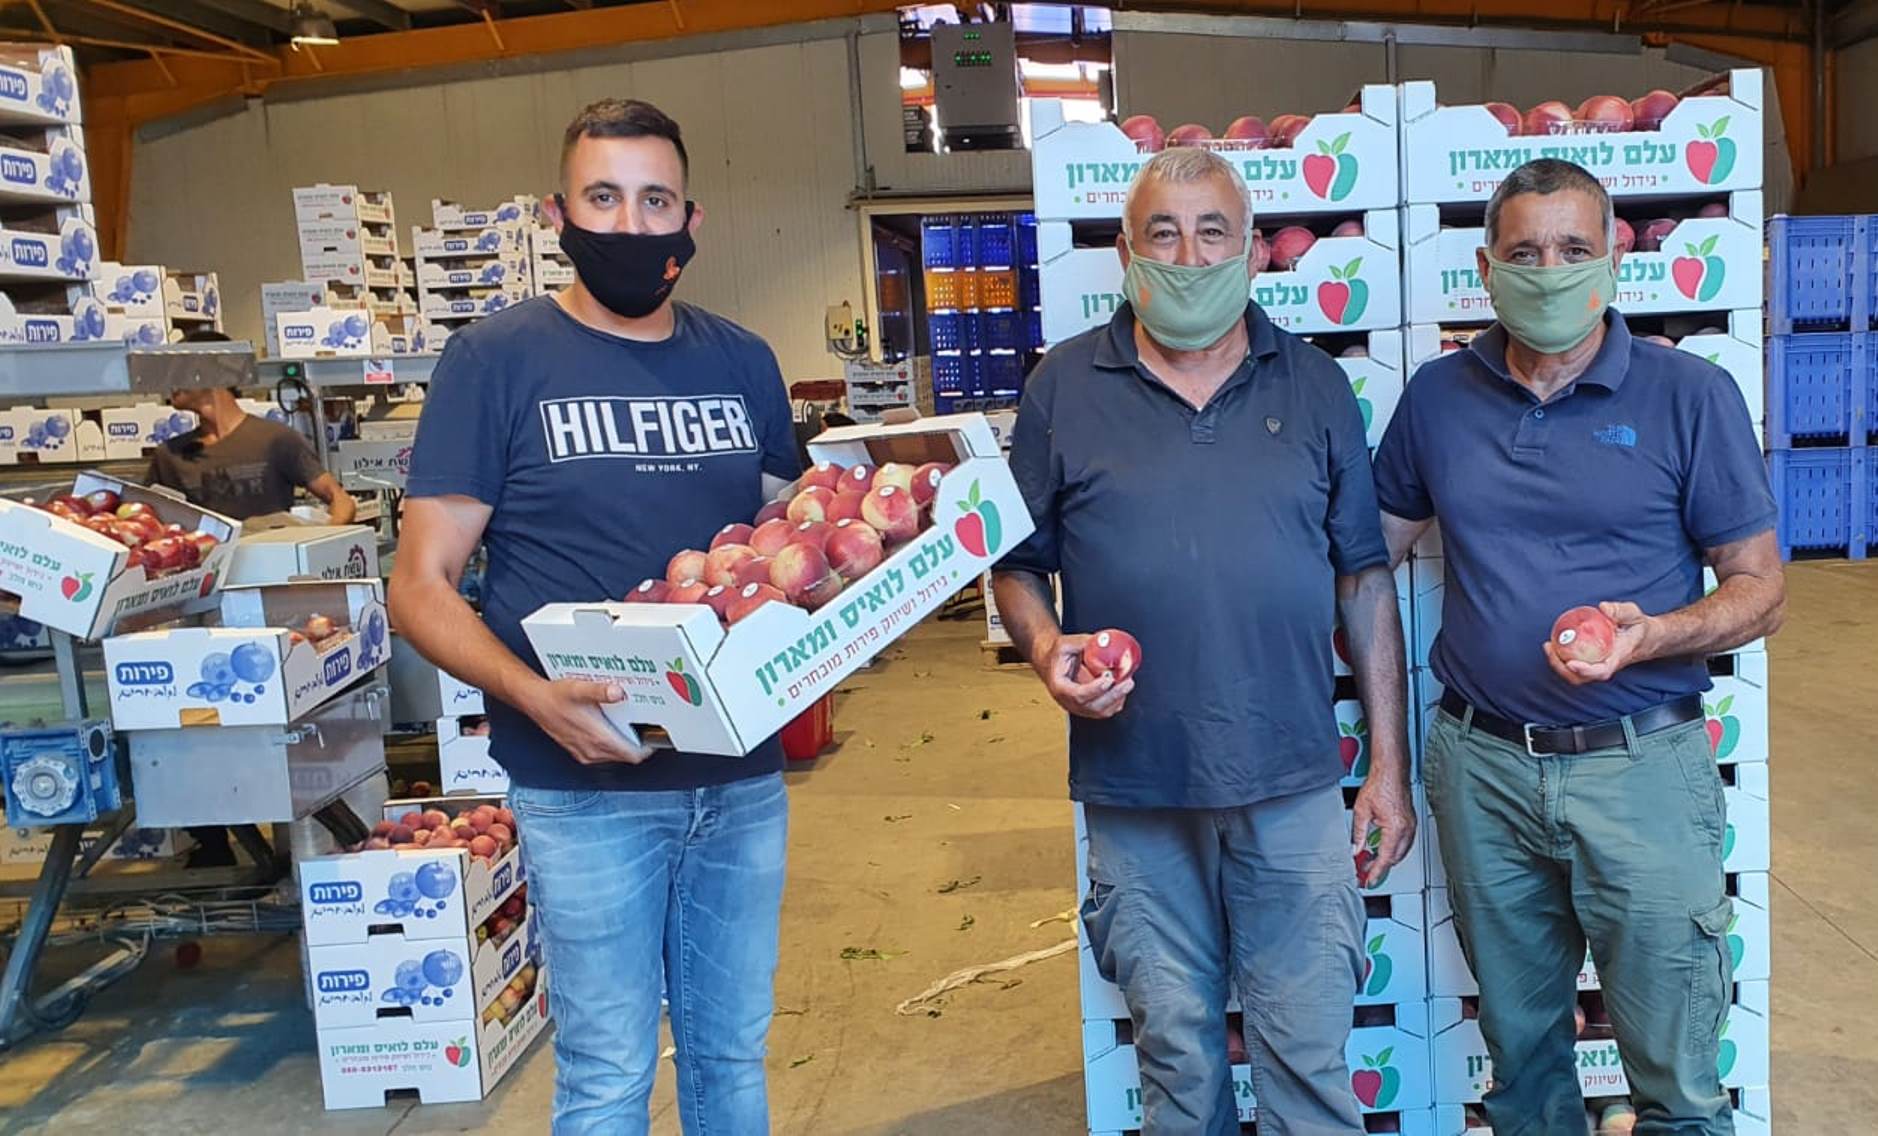 ירון בלחסן מנכ"ל ארגון מגדלי הפירות בישראל, ערך סיור במטעי משפחת החקלאים עלם מג'יש (גוש חלב) הנמצאים בשיא עונת קטיף הנקטרינה.